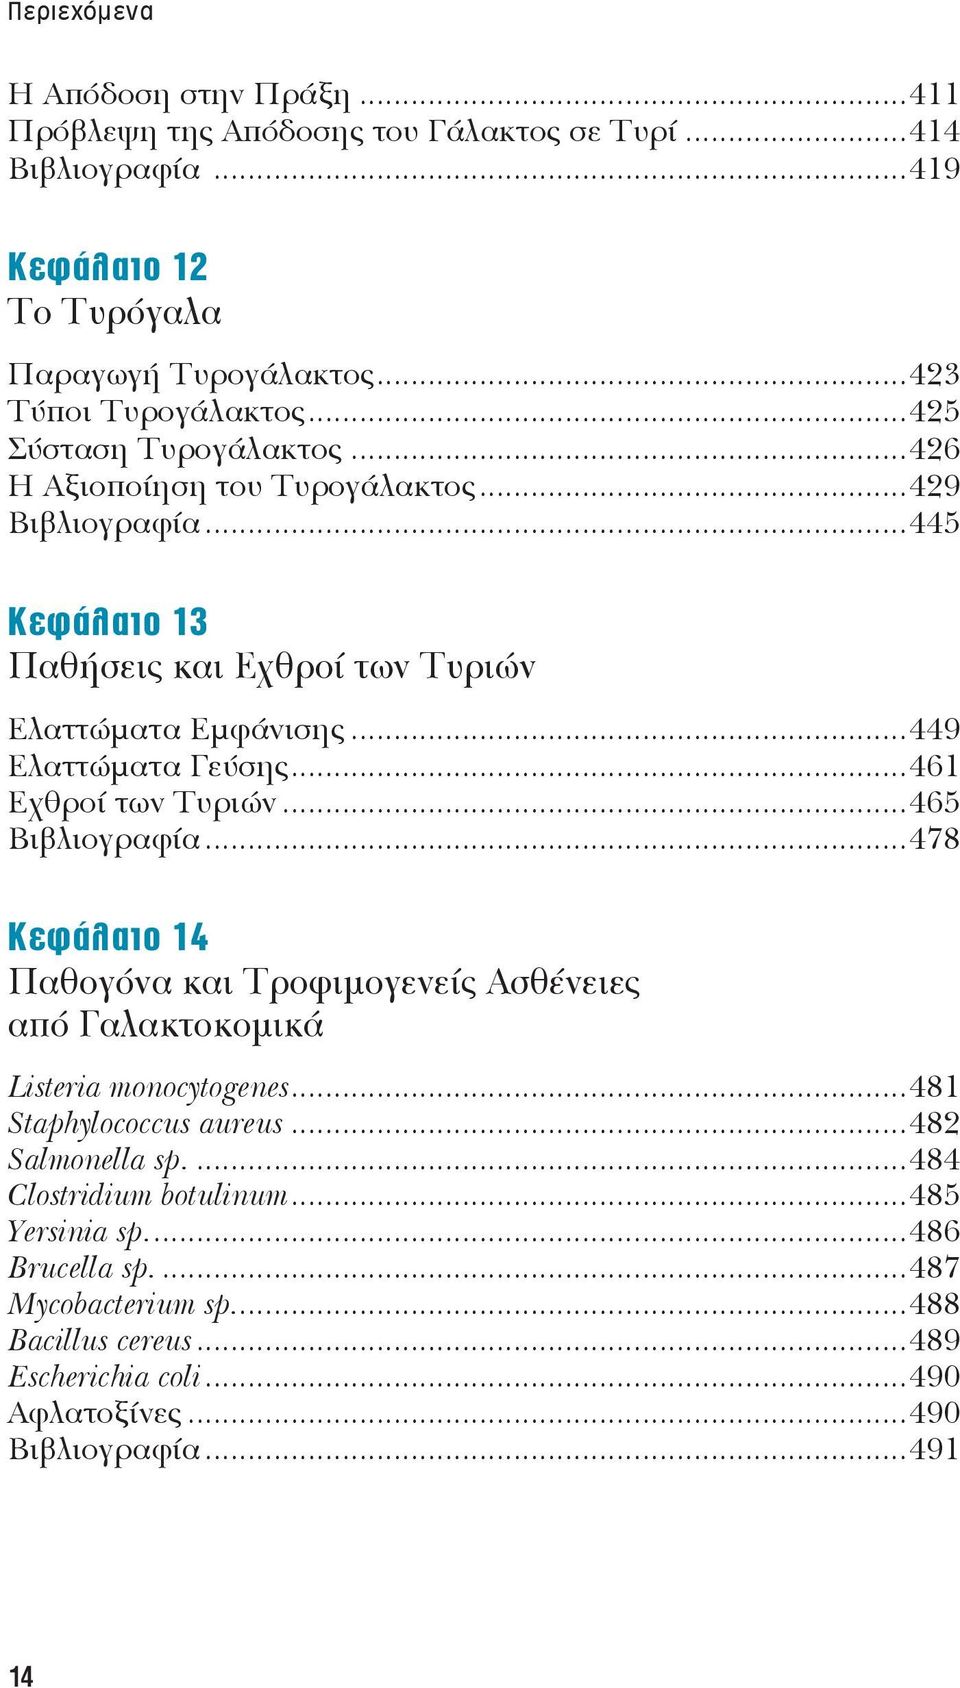 ..461 Εχθροί των Τυριών...465 Βιβλιογραφία...478 Κεφάλαιο 14 Παθογόνα και Τροφιμογενείς Ασθένειες από Γαλακτοκομικά Listeria monocytogenes...481 Staphylococcus aureus.